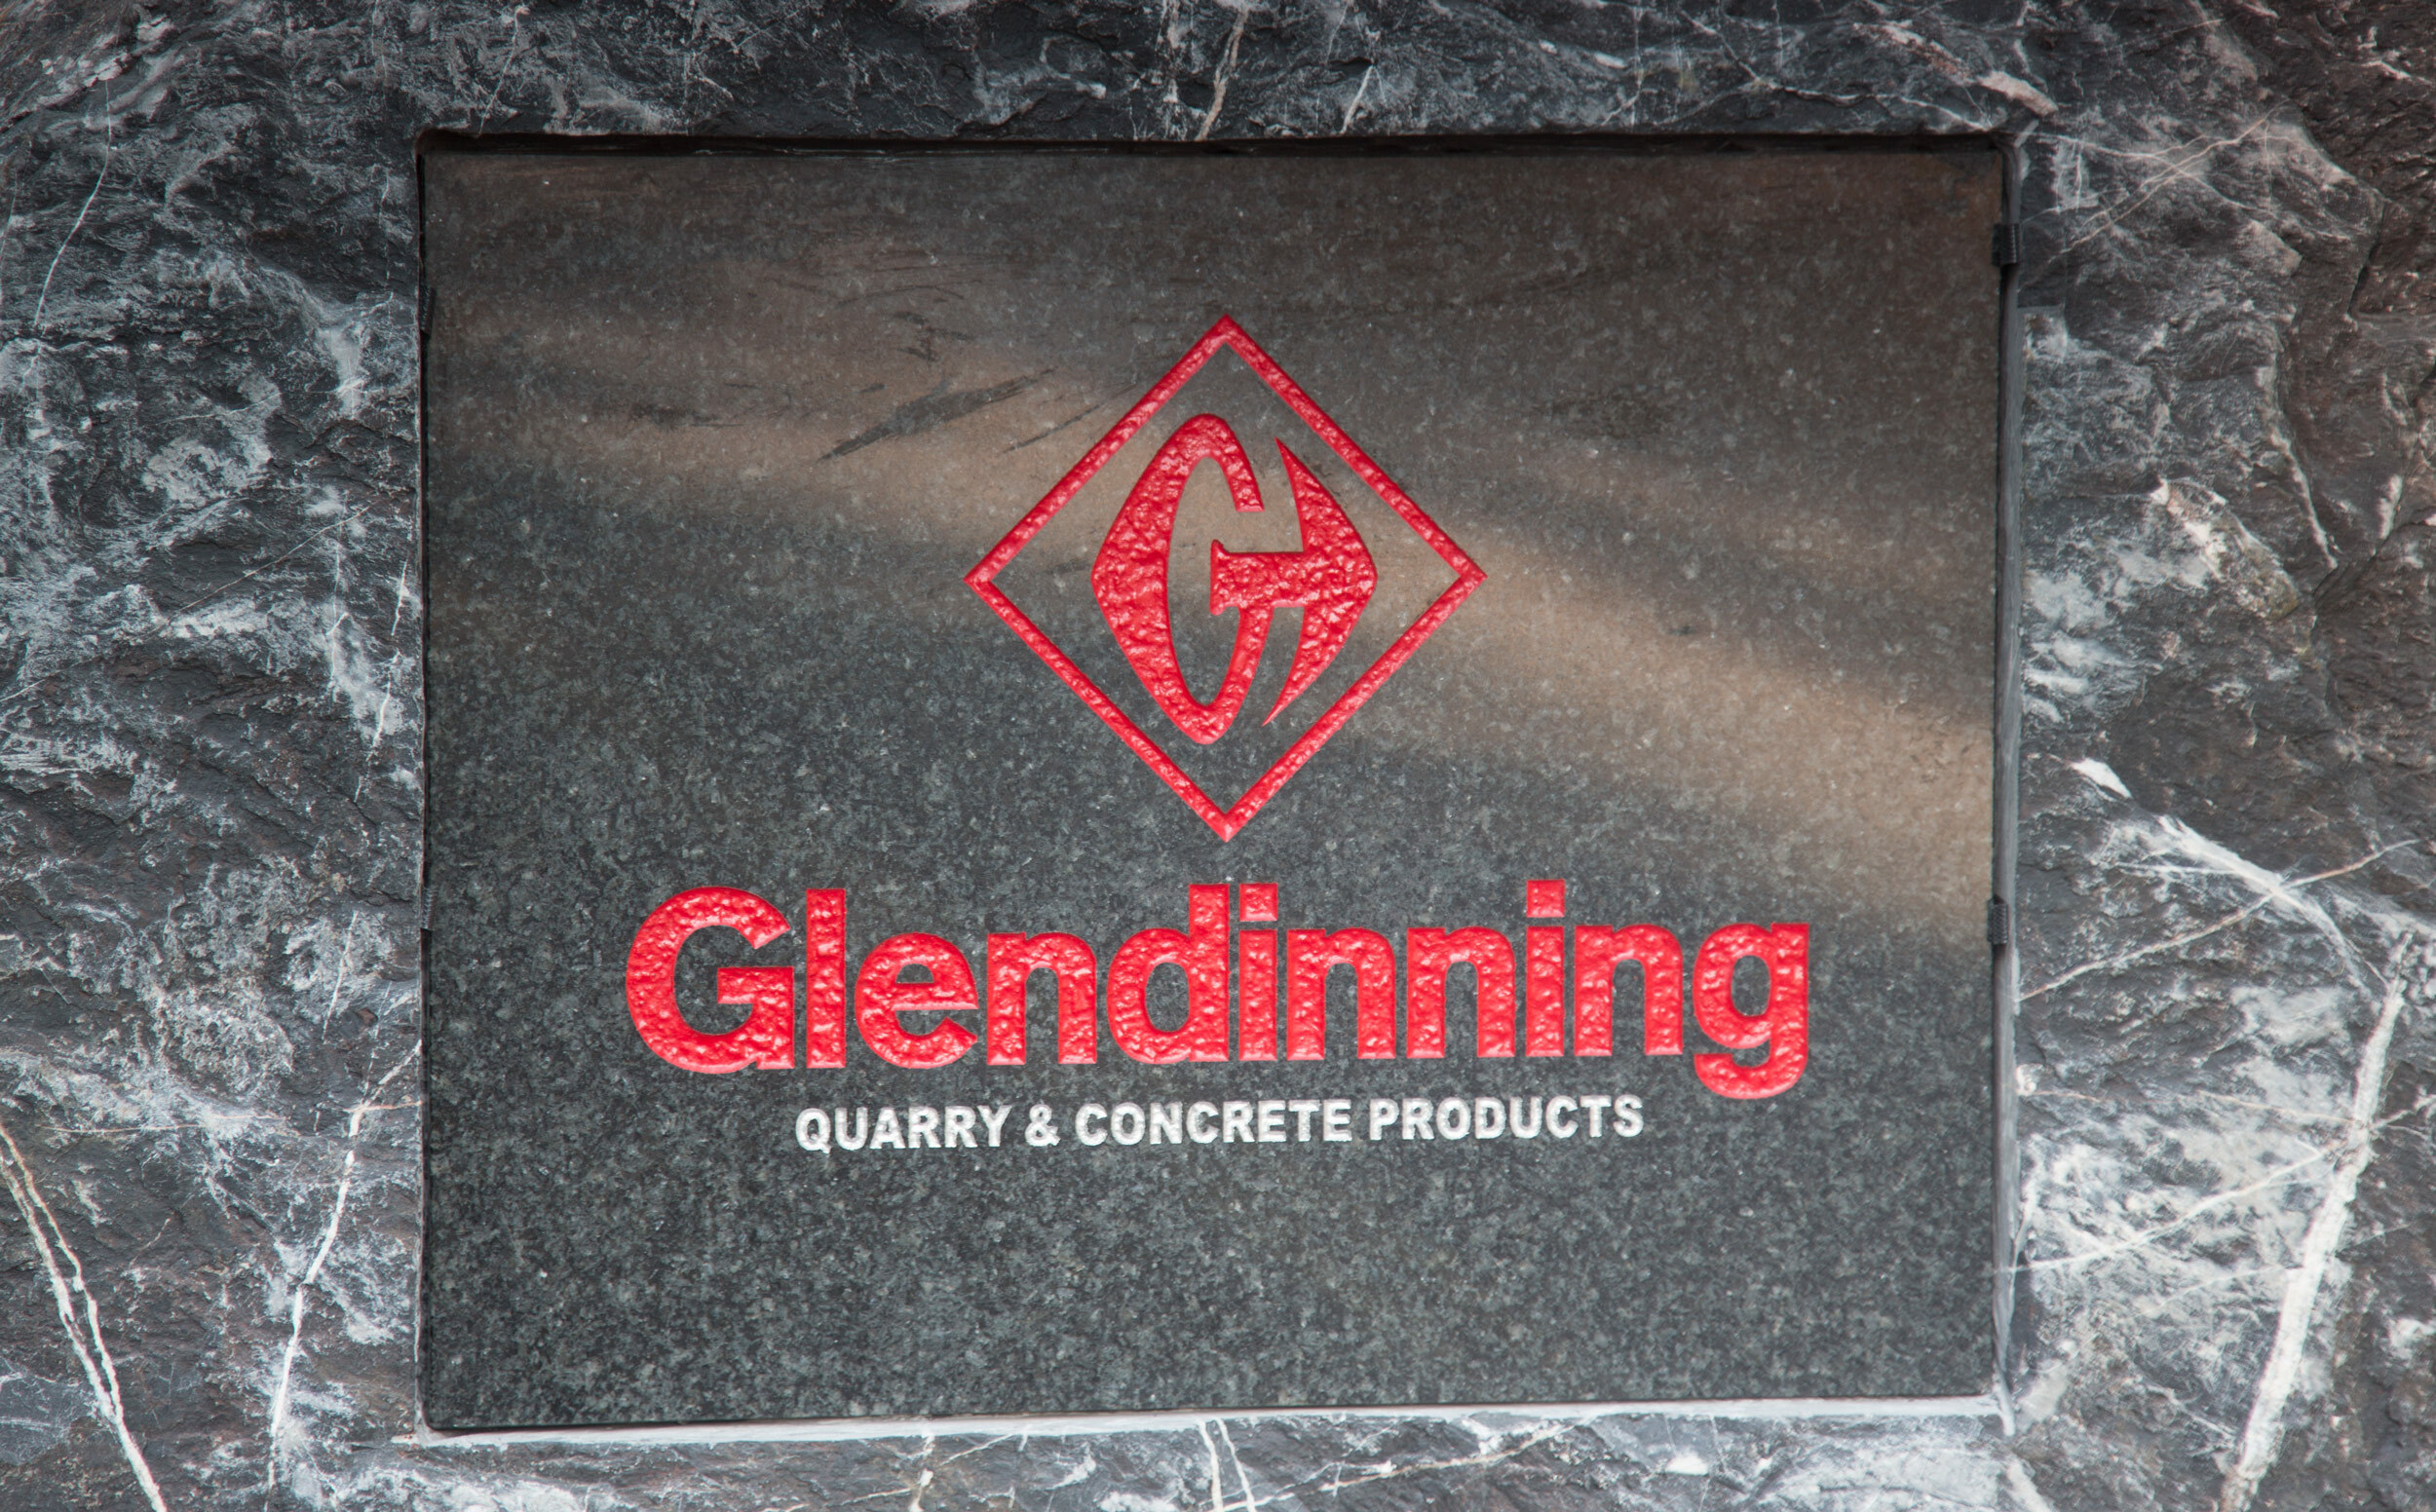 Glendinning Sign